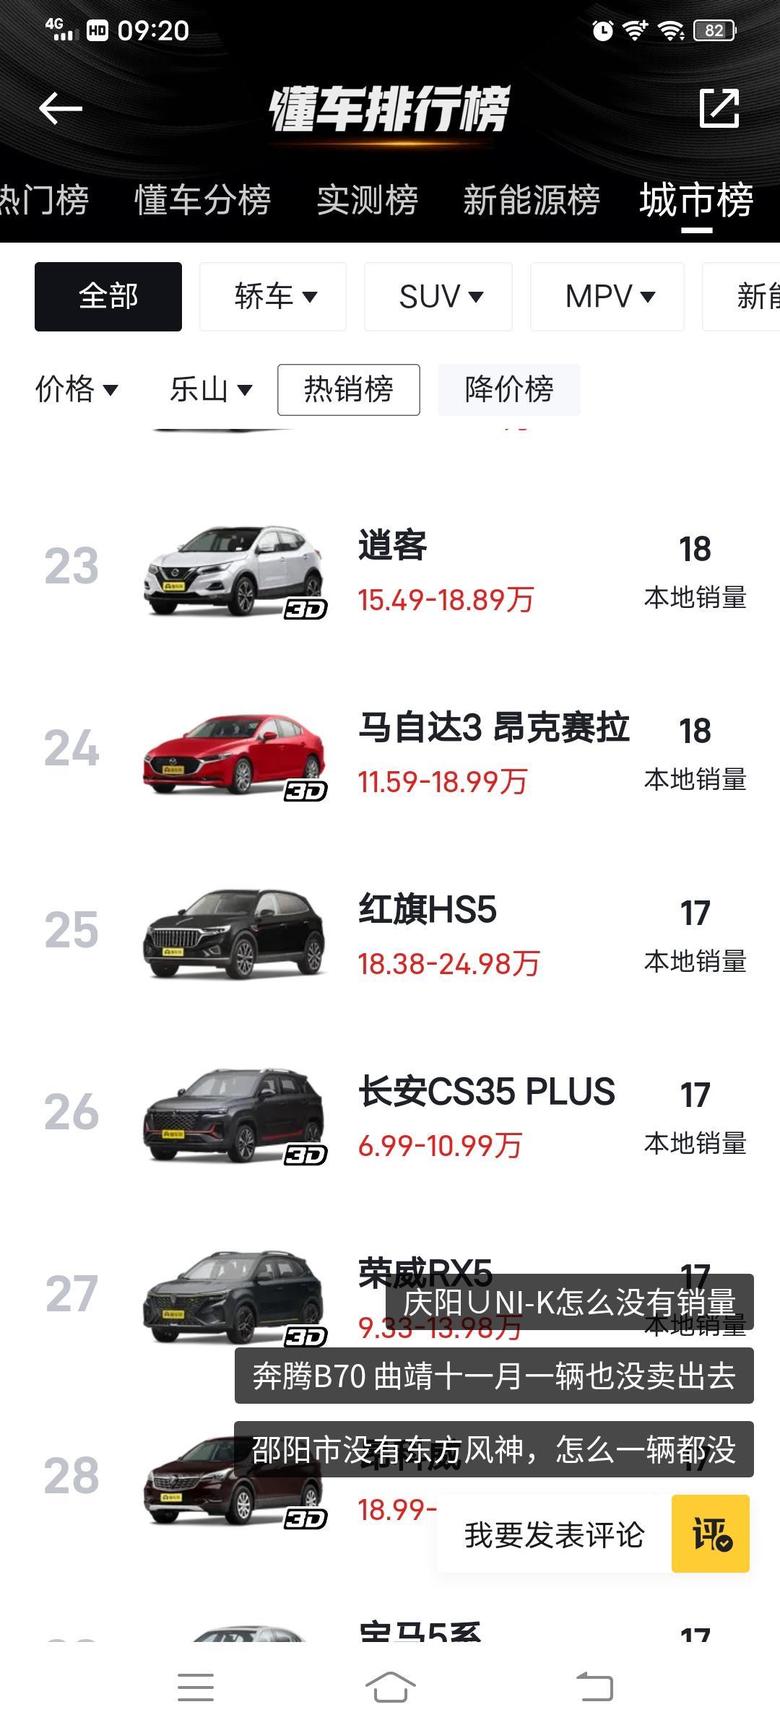 红旗hs5 11月份，乐山市金名仕红旗体验中心只销售了17台HS5，其他车都没有，这17台车里面还不知道有没有是10月份销的，11月提车的